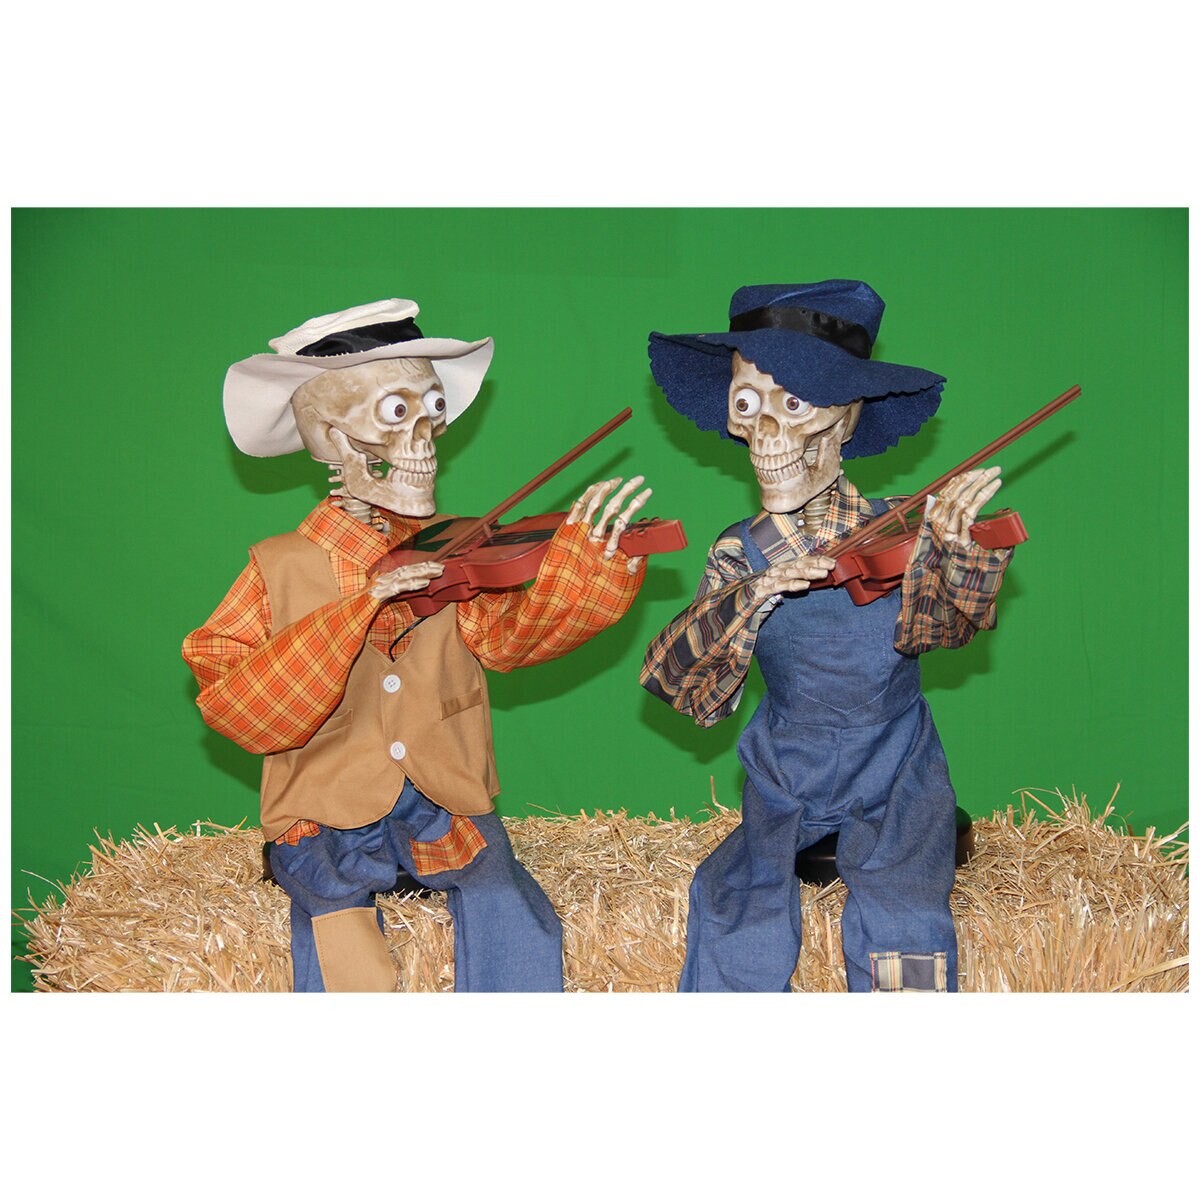 Animated Fiddler Skeletons